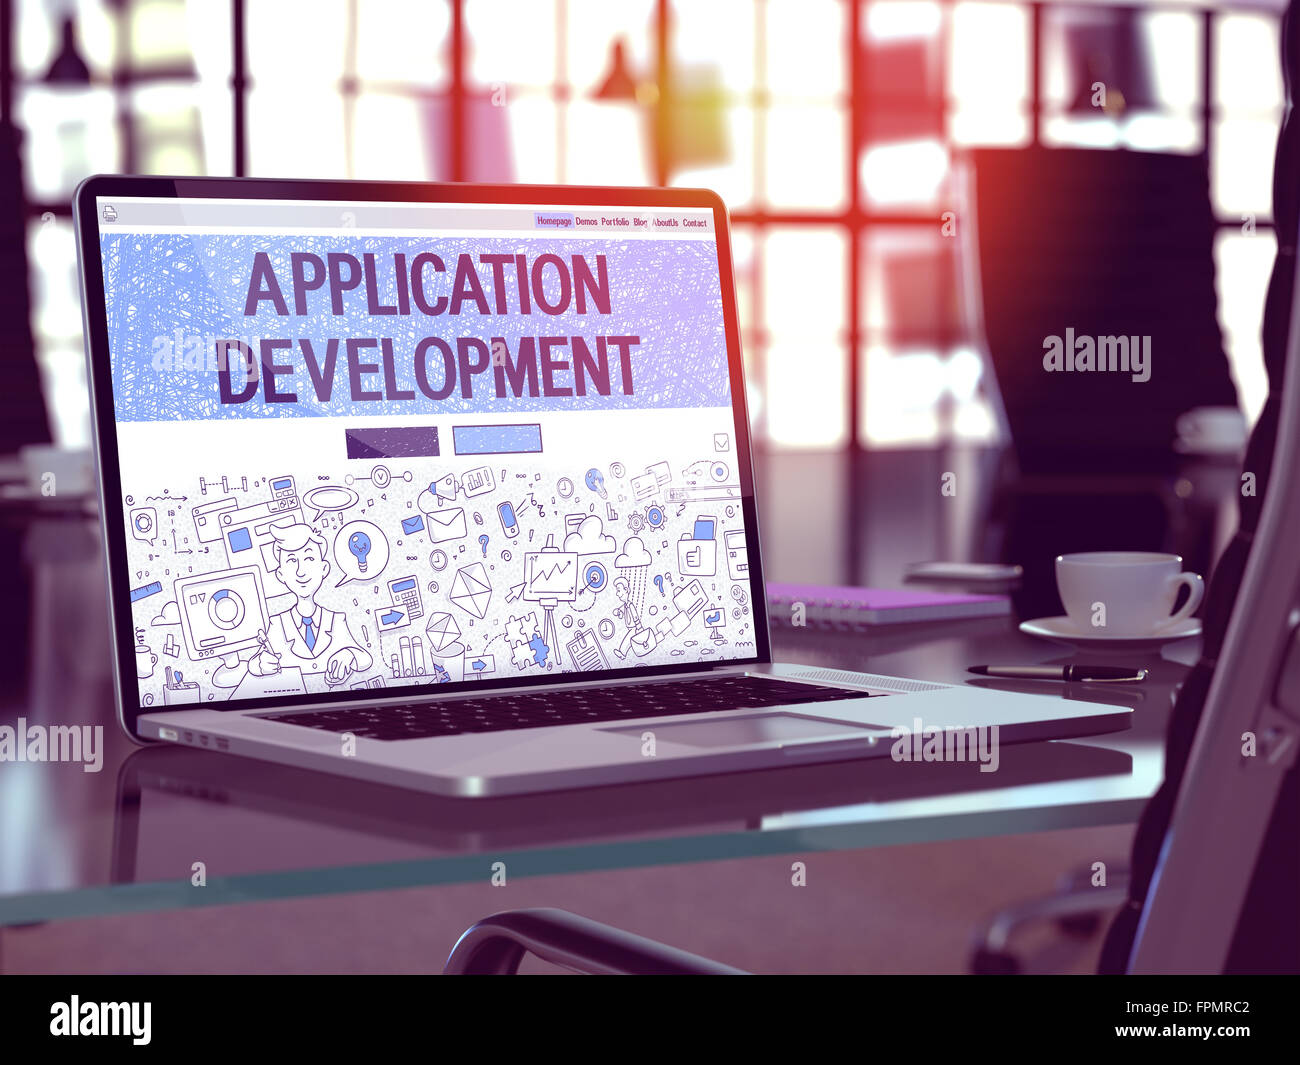 Schermo portatile con Application Development Concept. Foto Stock